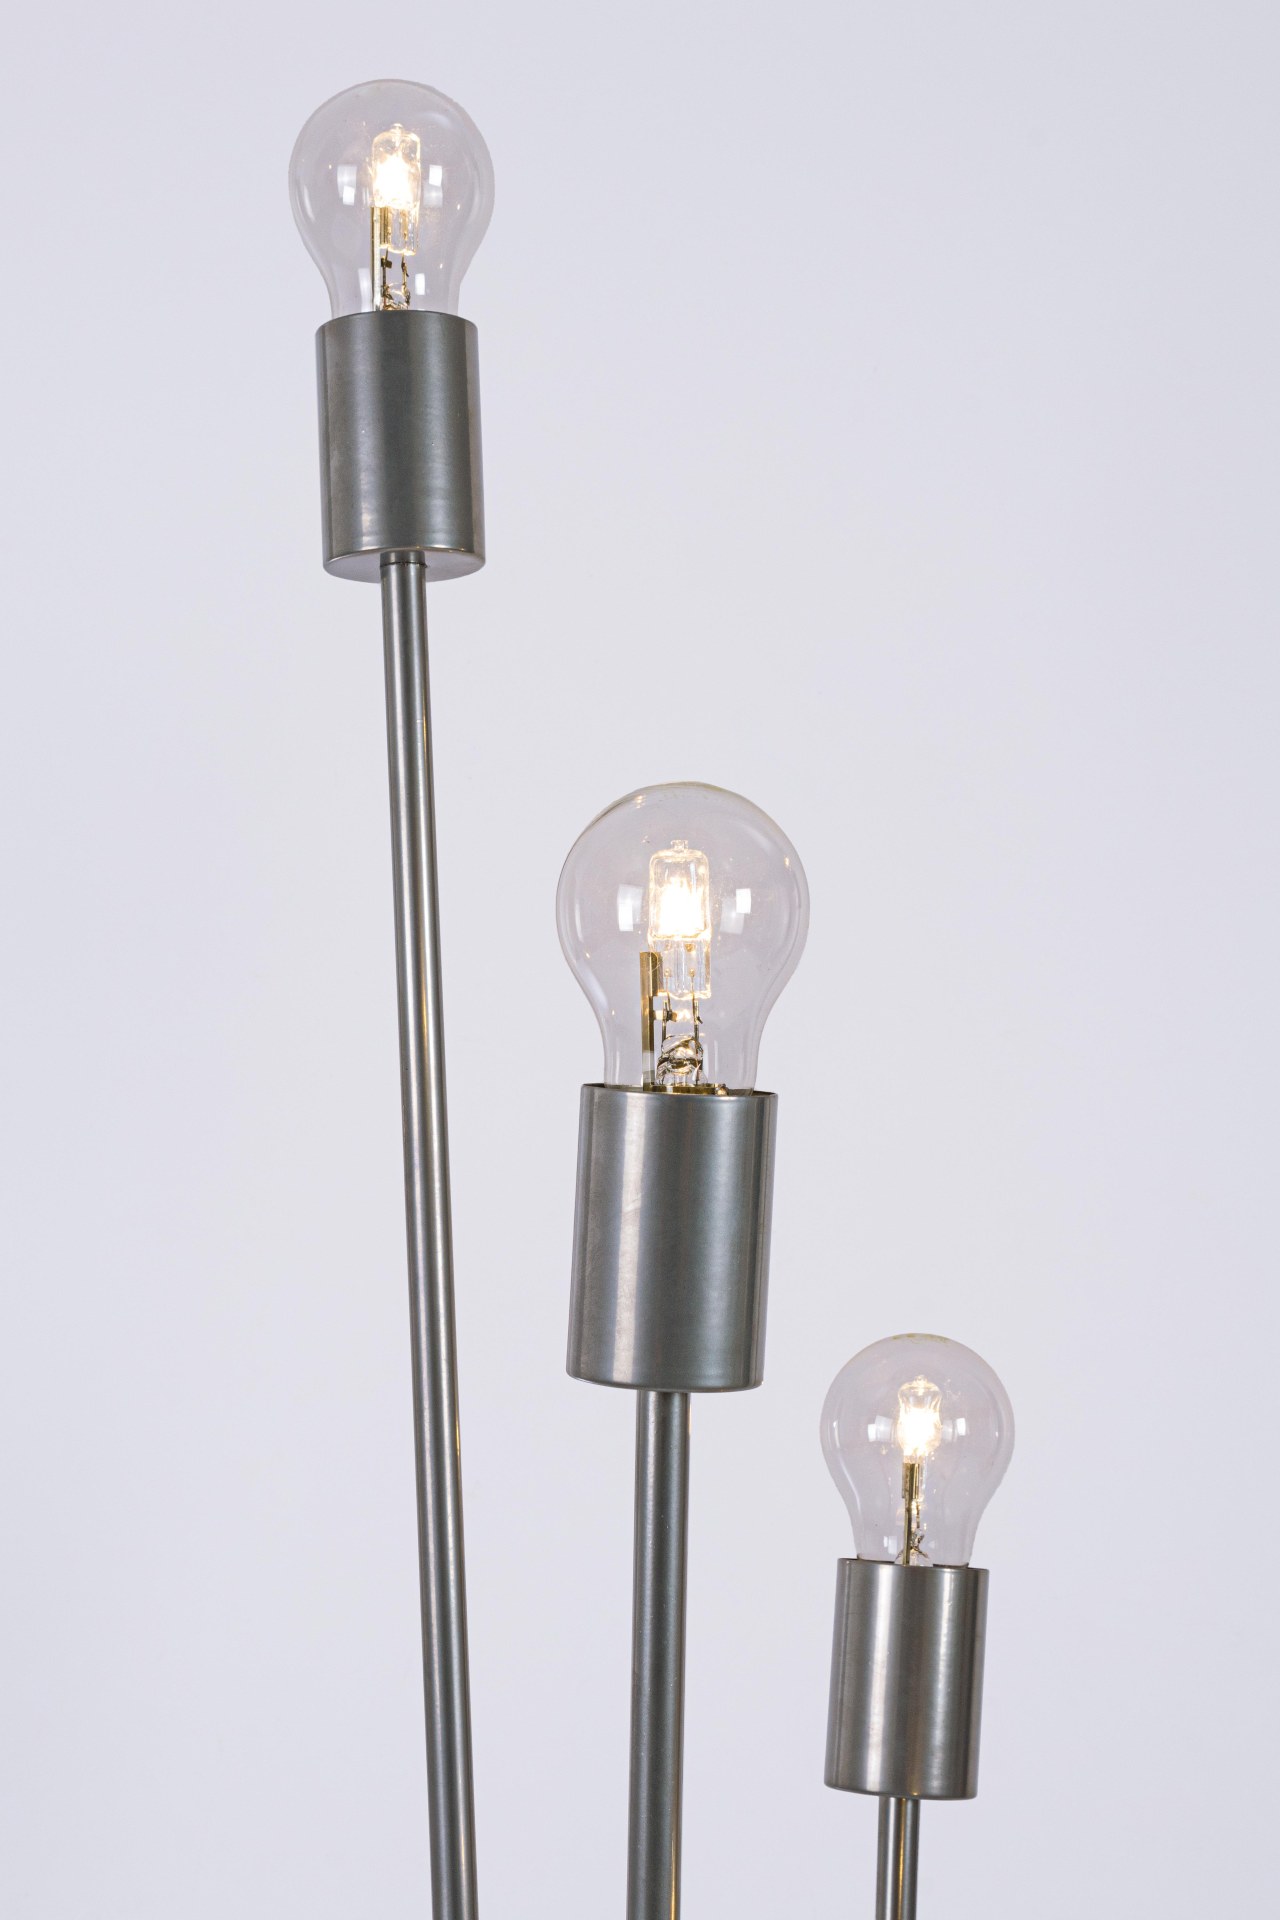 Die Stehleuchte Fiaccola überzeugt mit ihrem modernen Design. Gefertigt wurde sie aus Metall, welches einen silbernen Farbton besitzt. Die Lampenschirme ist aus Glas. Die Lampe besitzt eine Höhe von 155 cm.